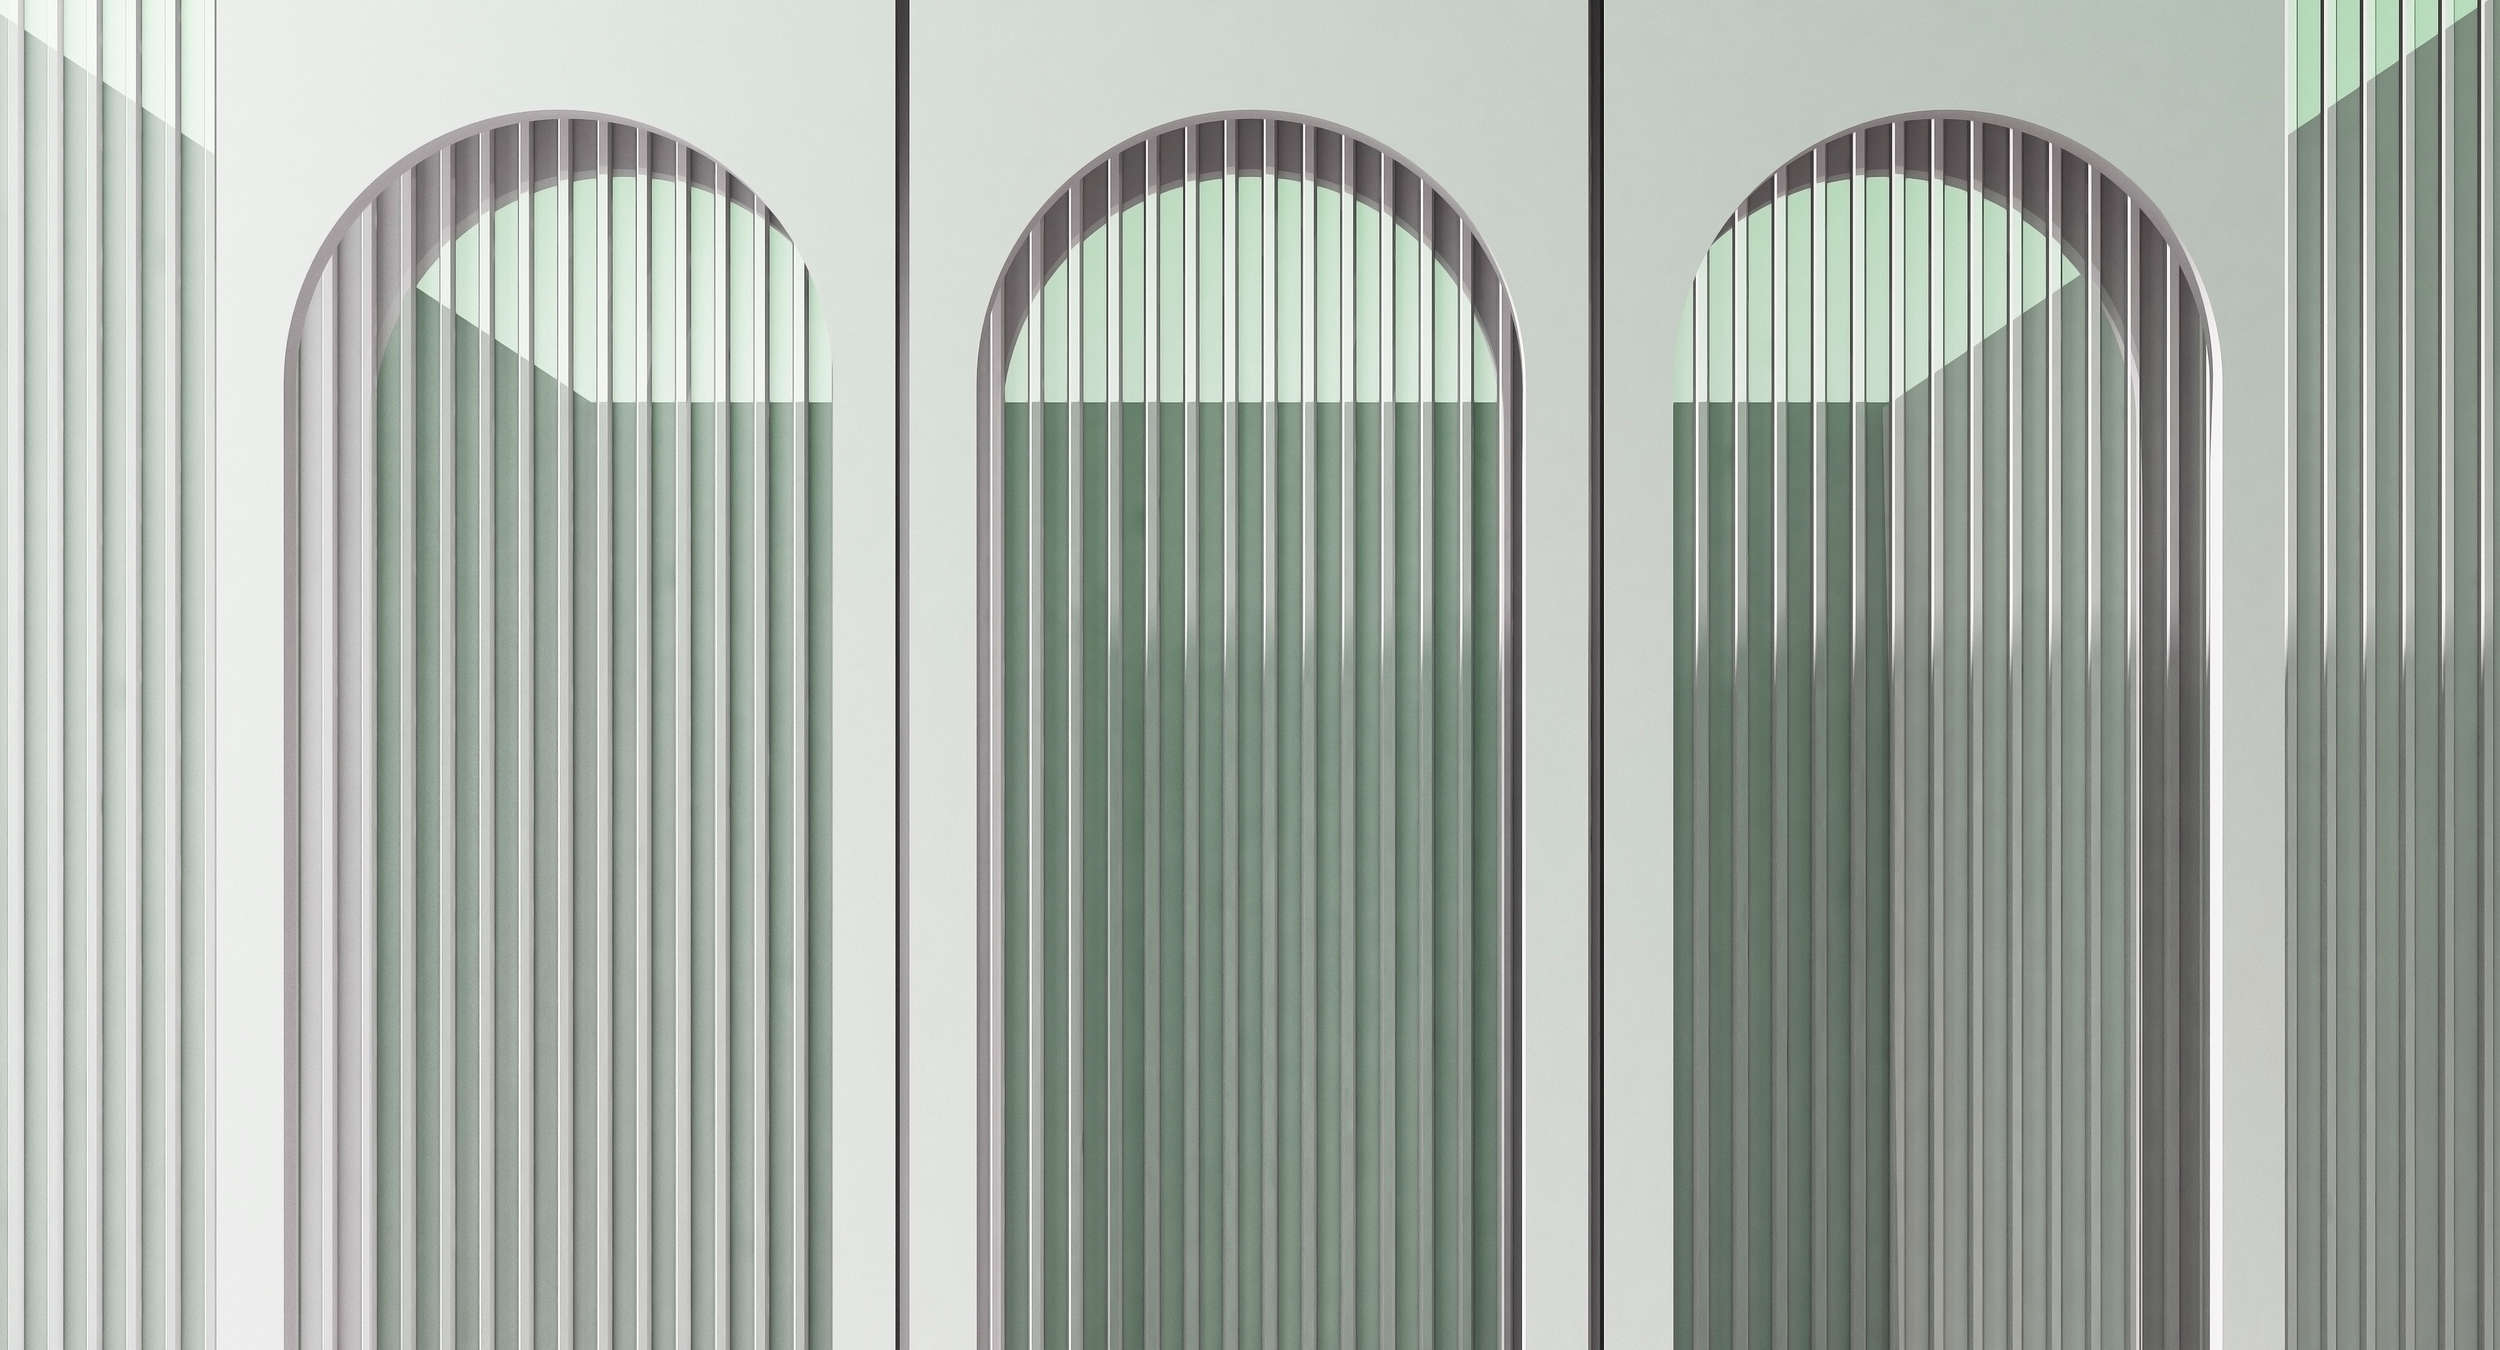             Escape Room 3 – Architektur Tapete moderne Aussichten Grau & Grün
        